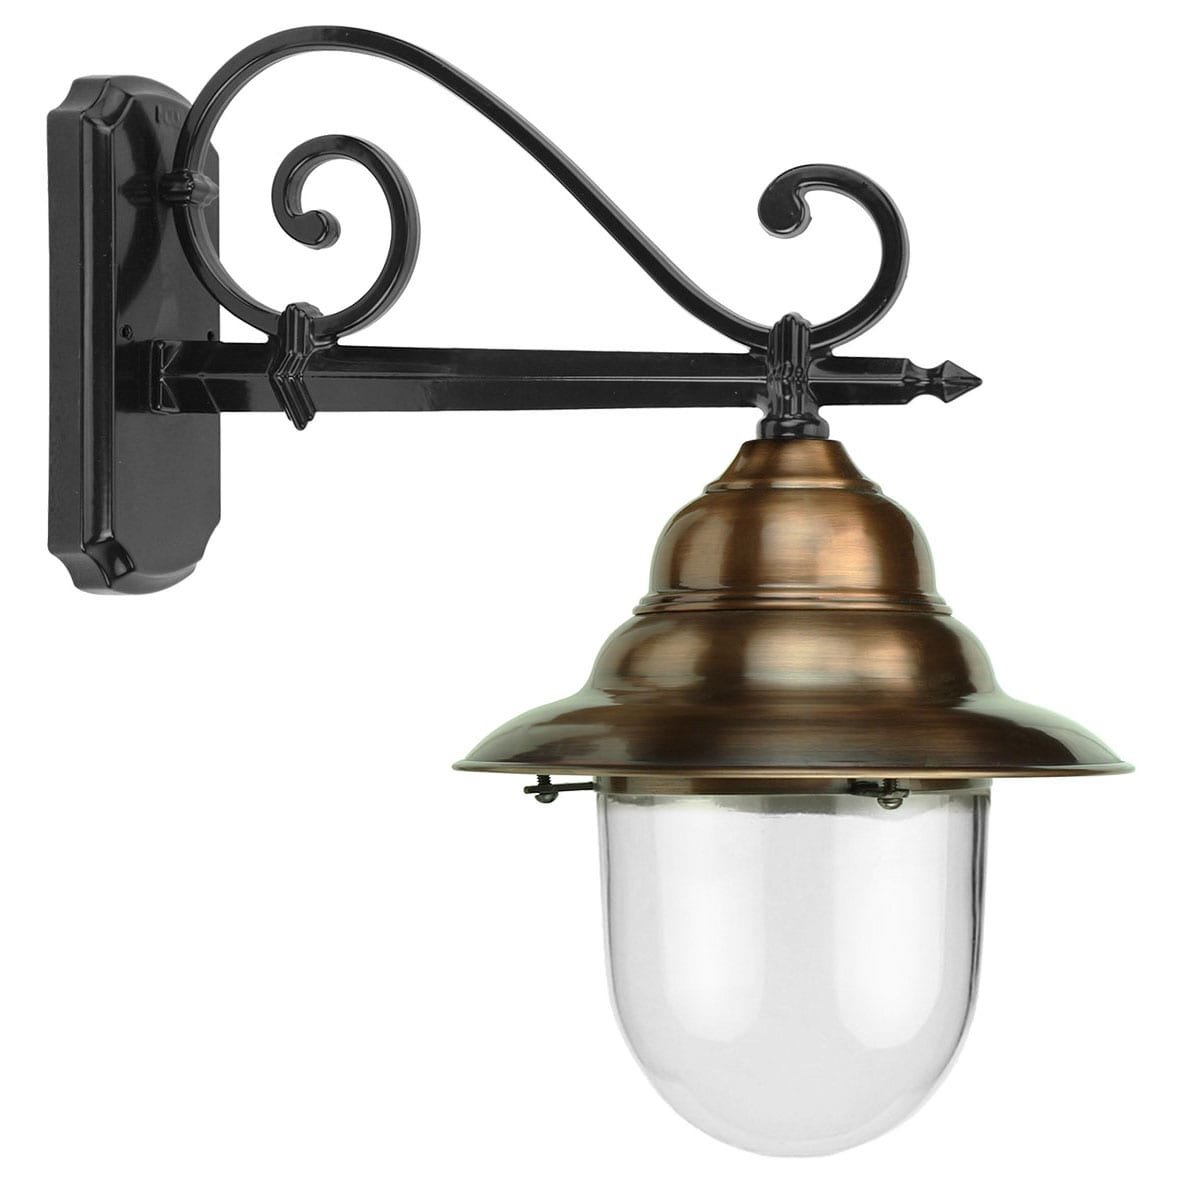 Wall lamp industrial copper Weerselo - 57 cm